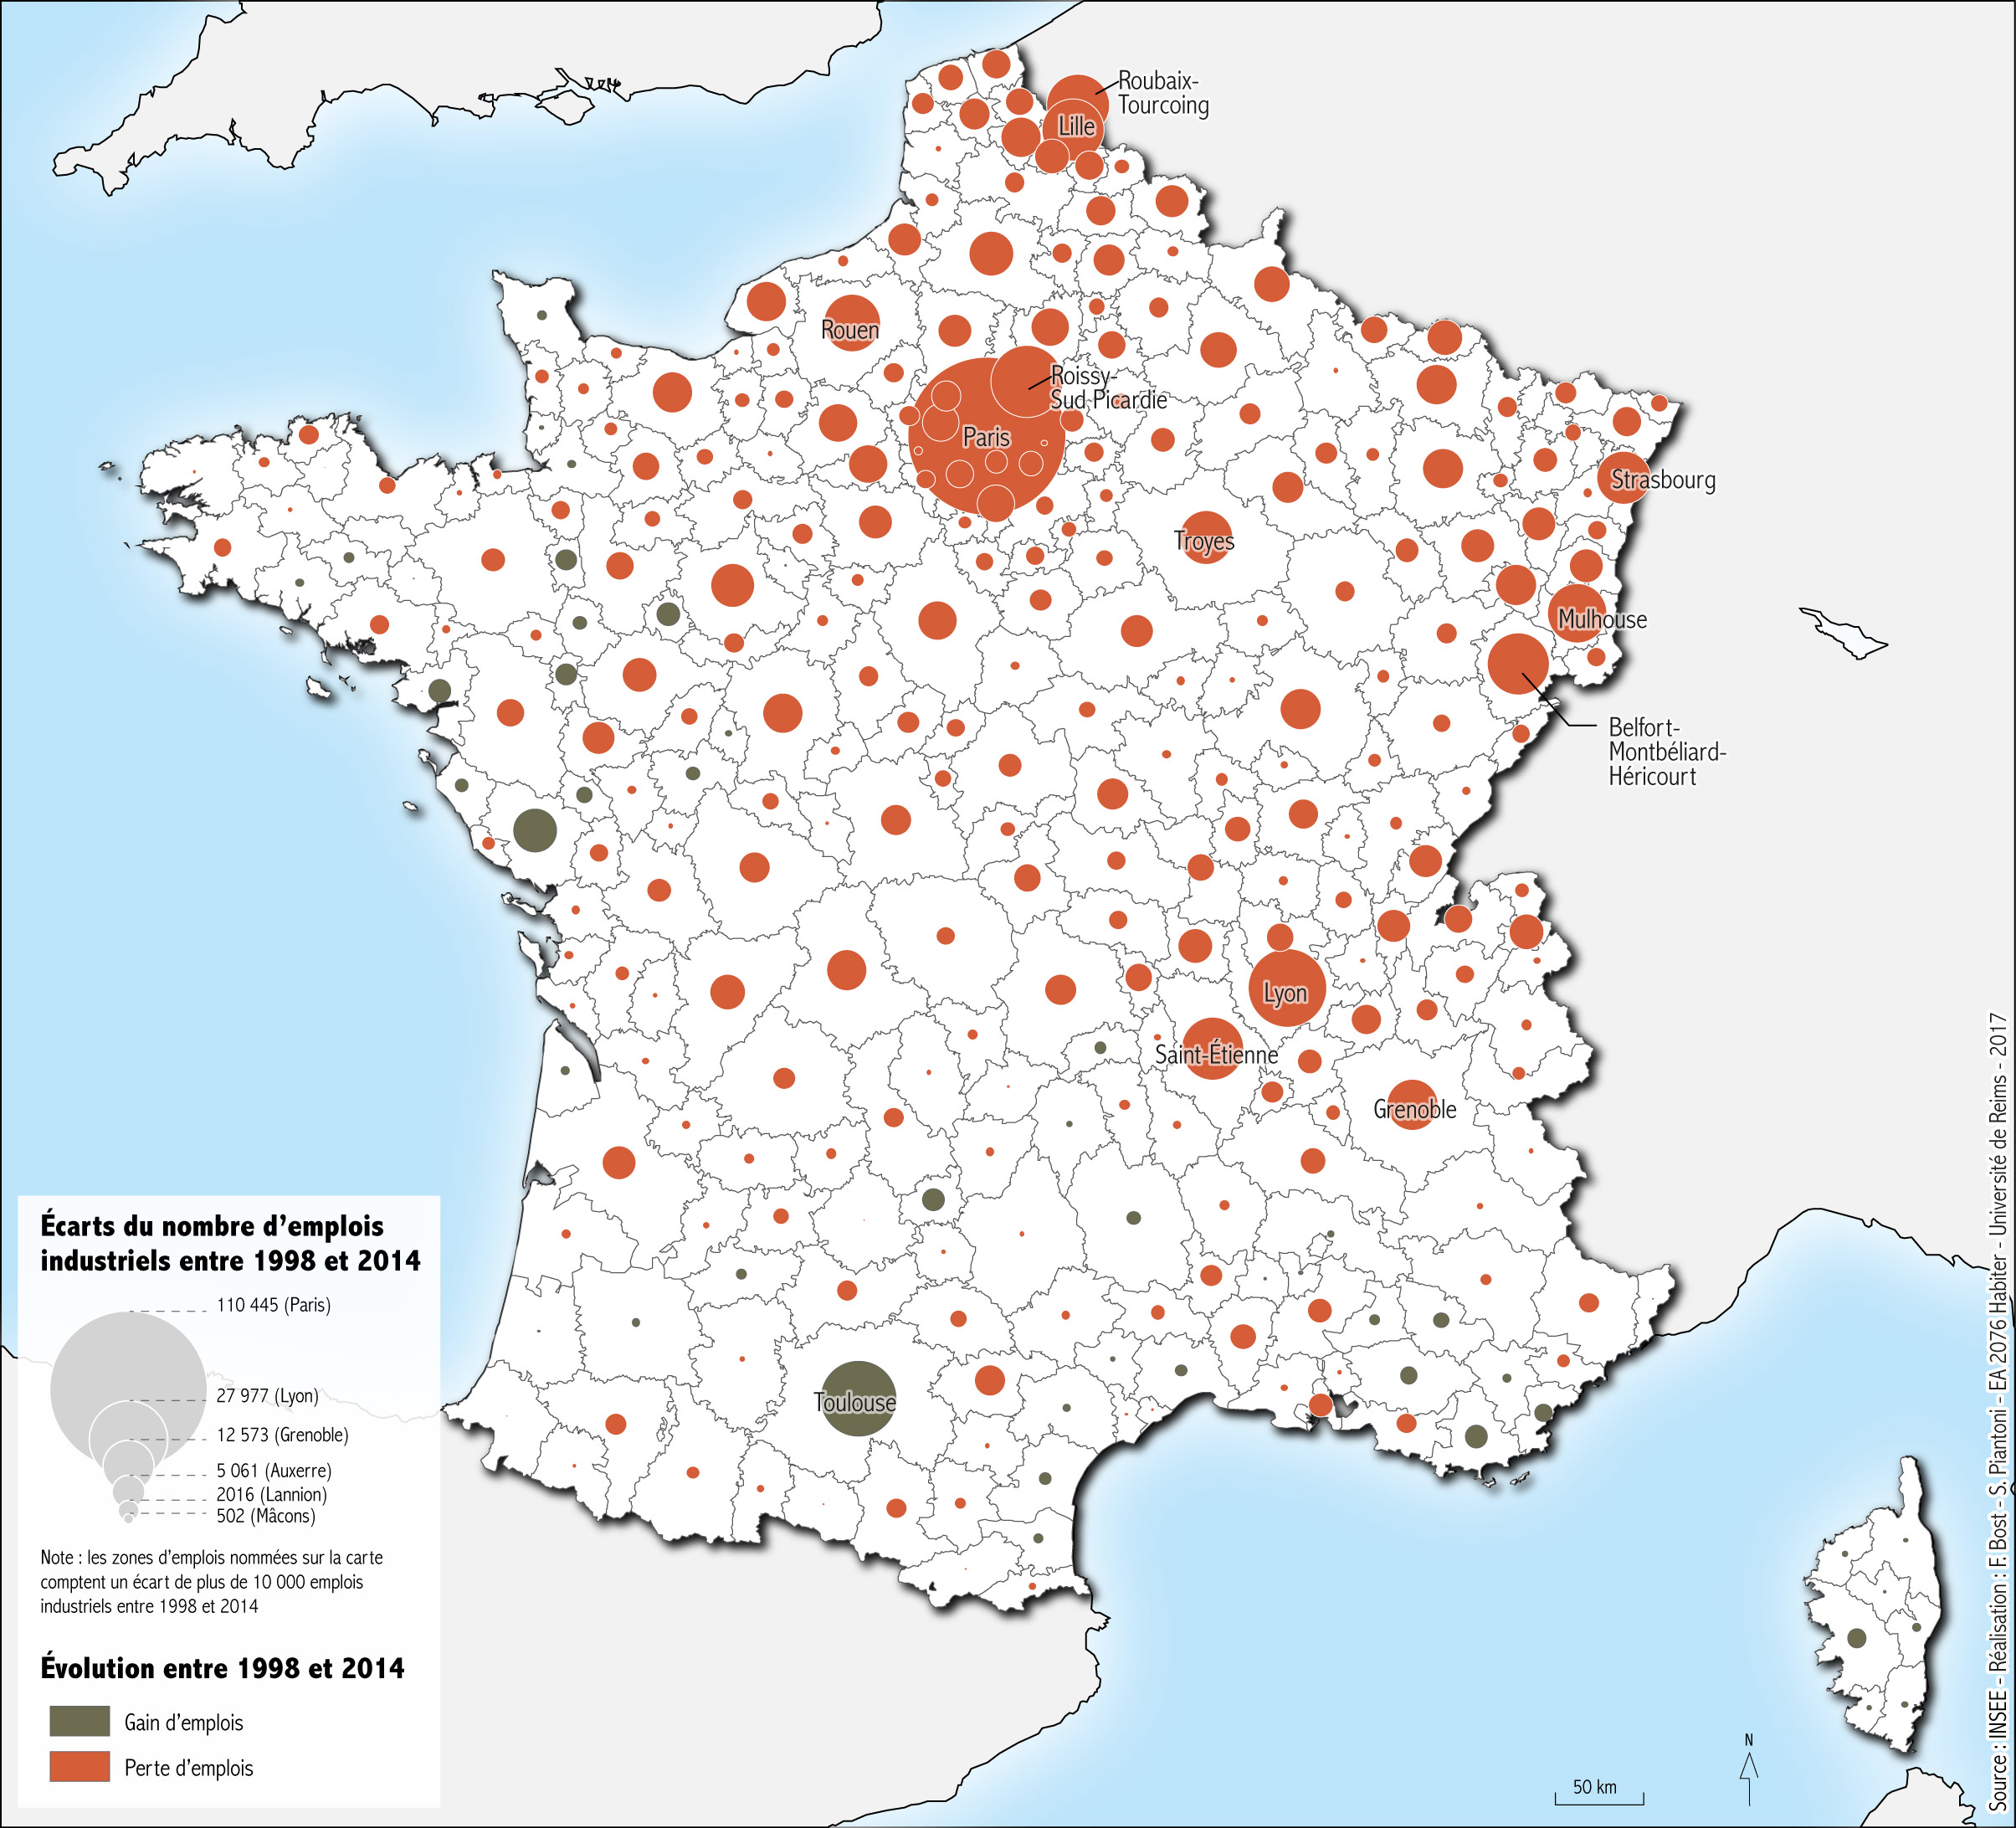 Carte des gains et pertes d’emplois industriels en France en 2014